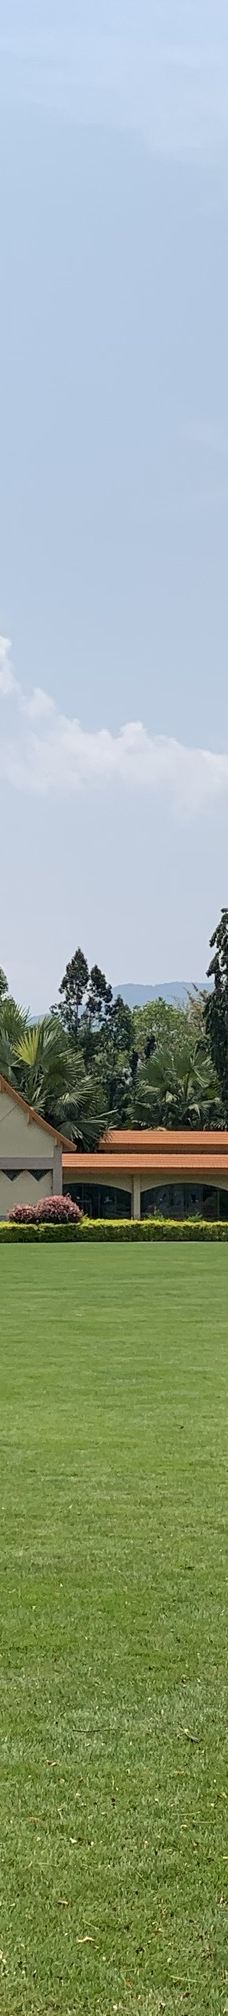 中科院西双版纳热带植物园-勐腊